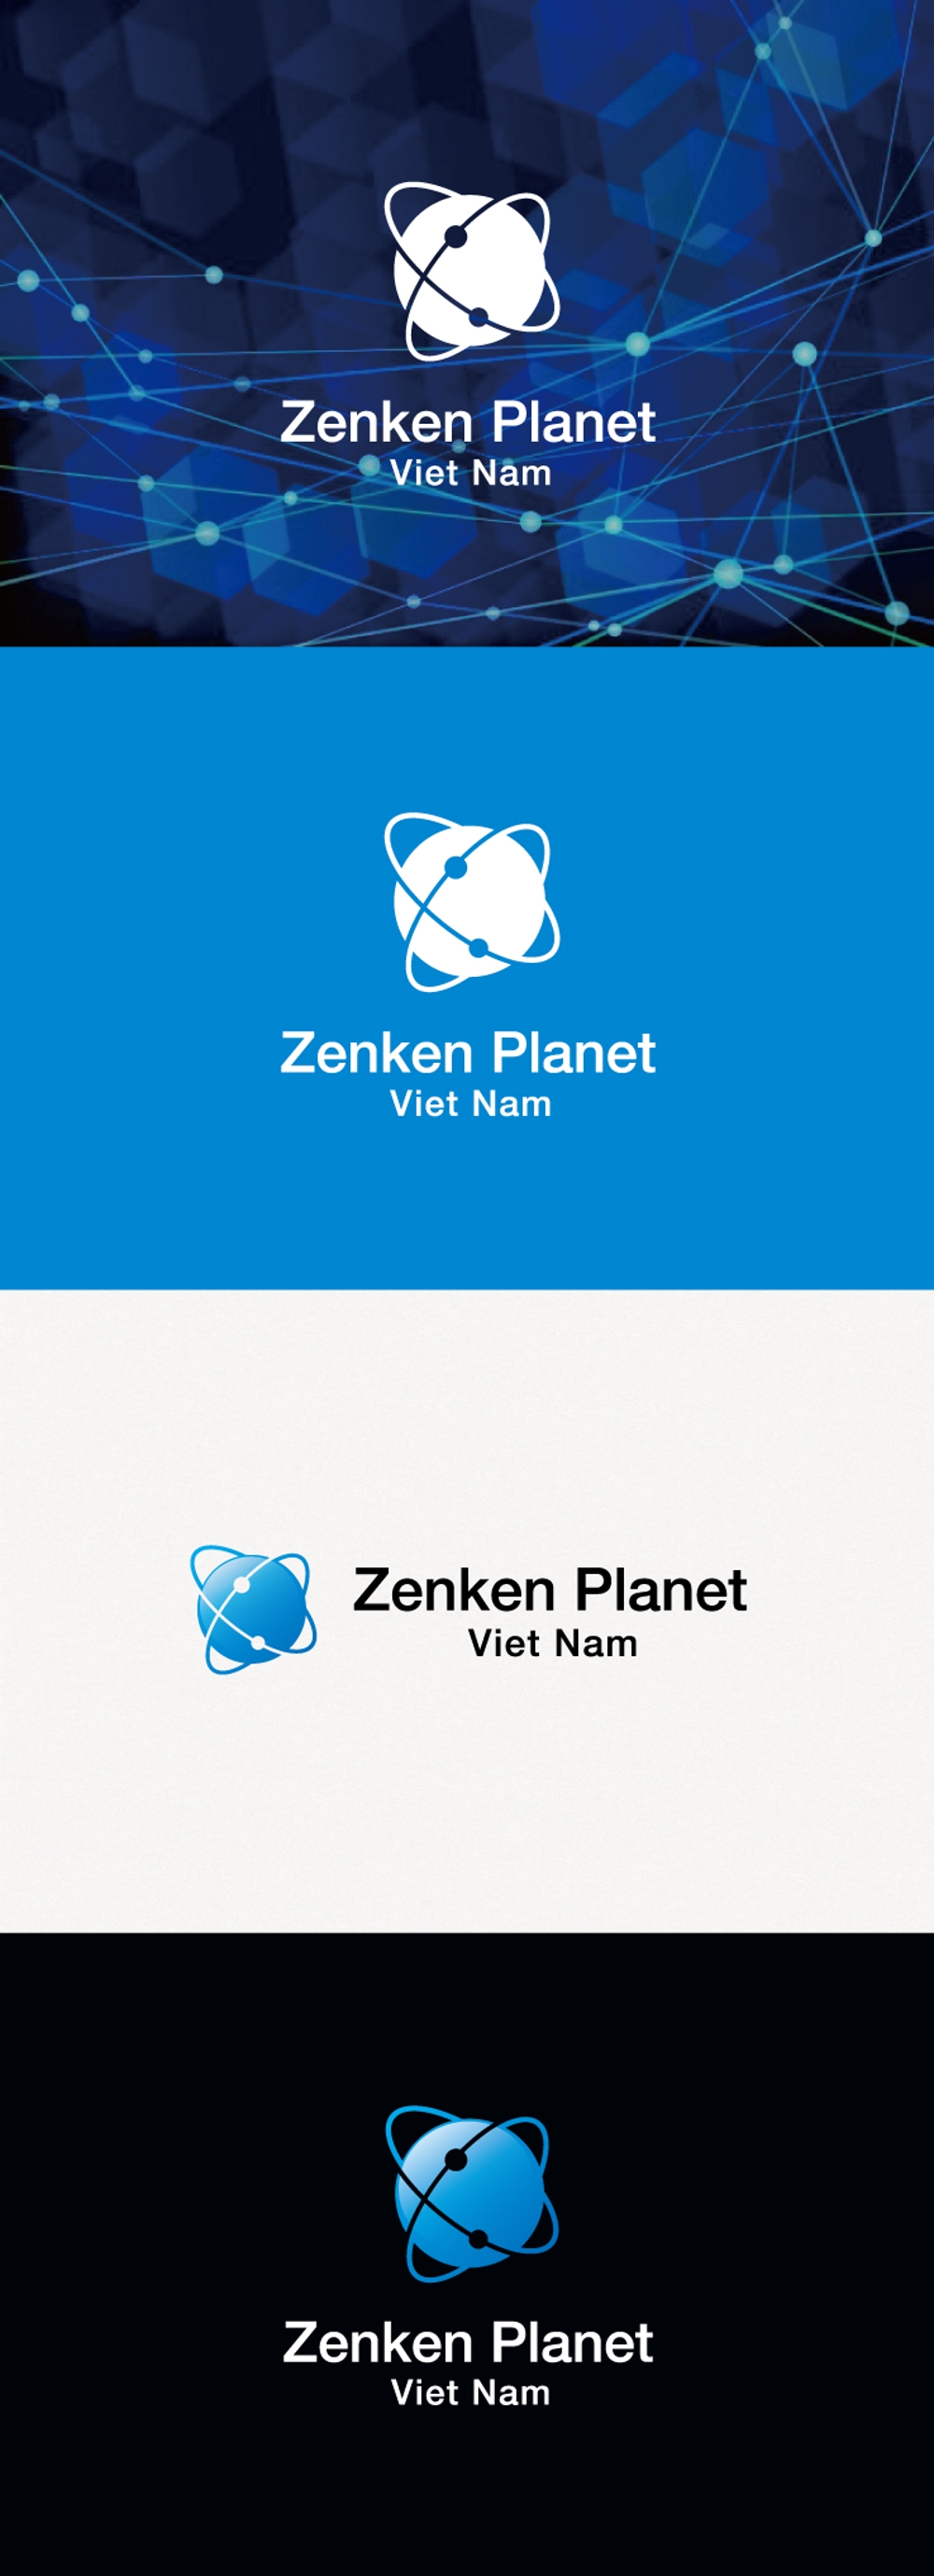 ベトナムに設立する新システム会社のロゴ